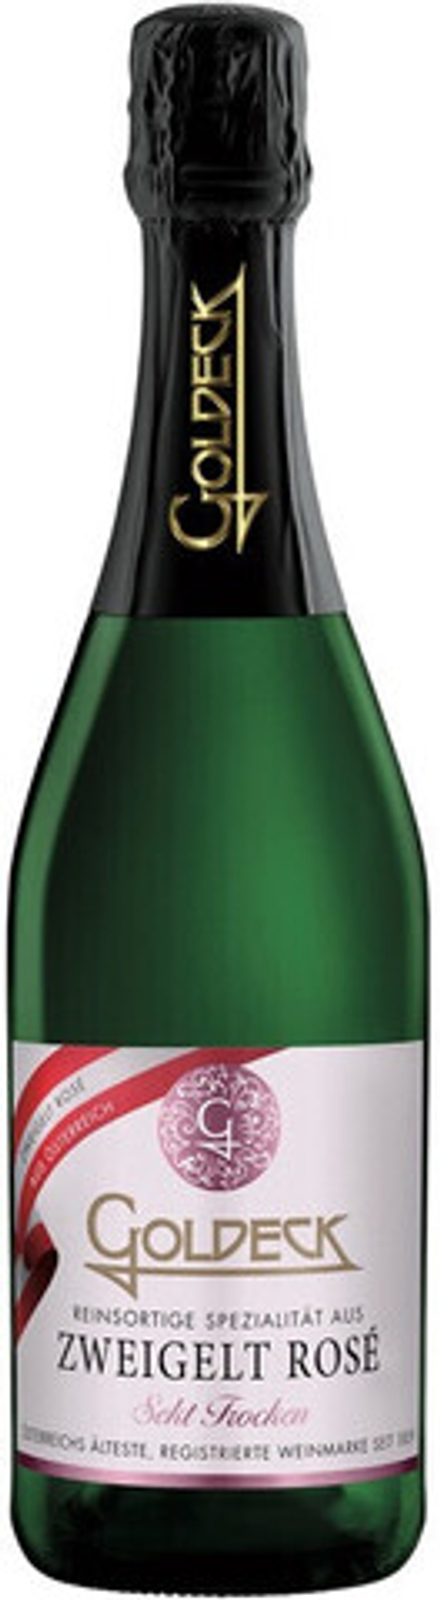 Игристое вино Goldeck Zweigelt Rose, 0,75 л.